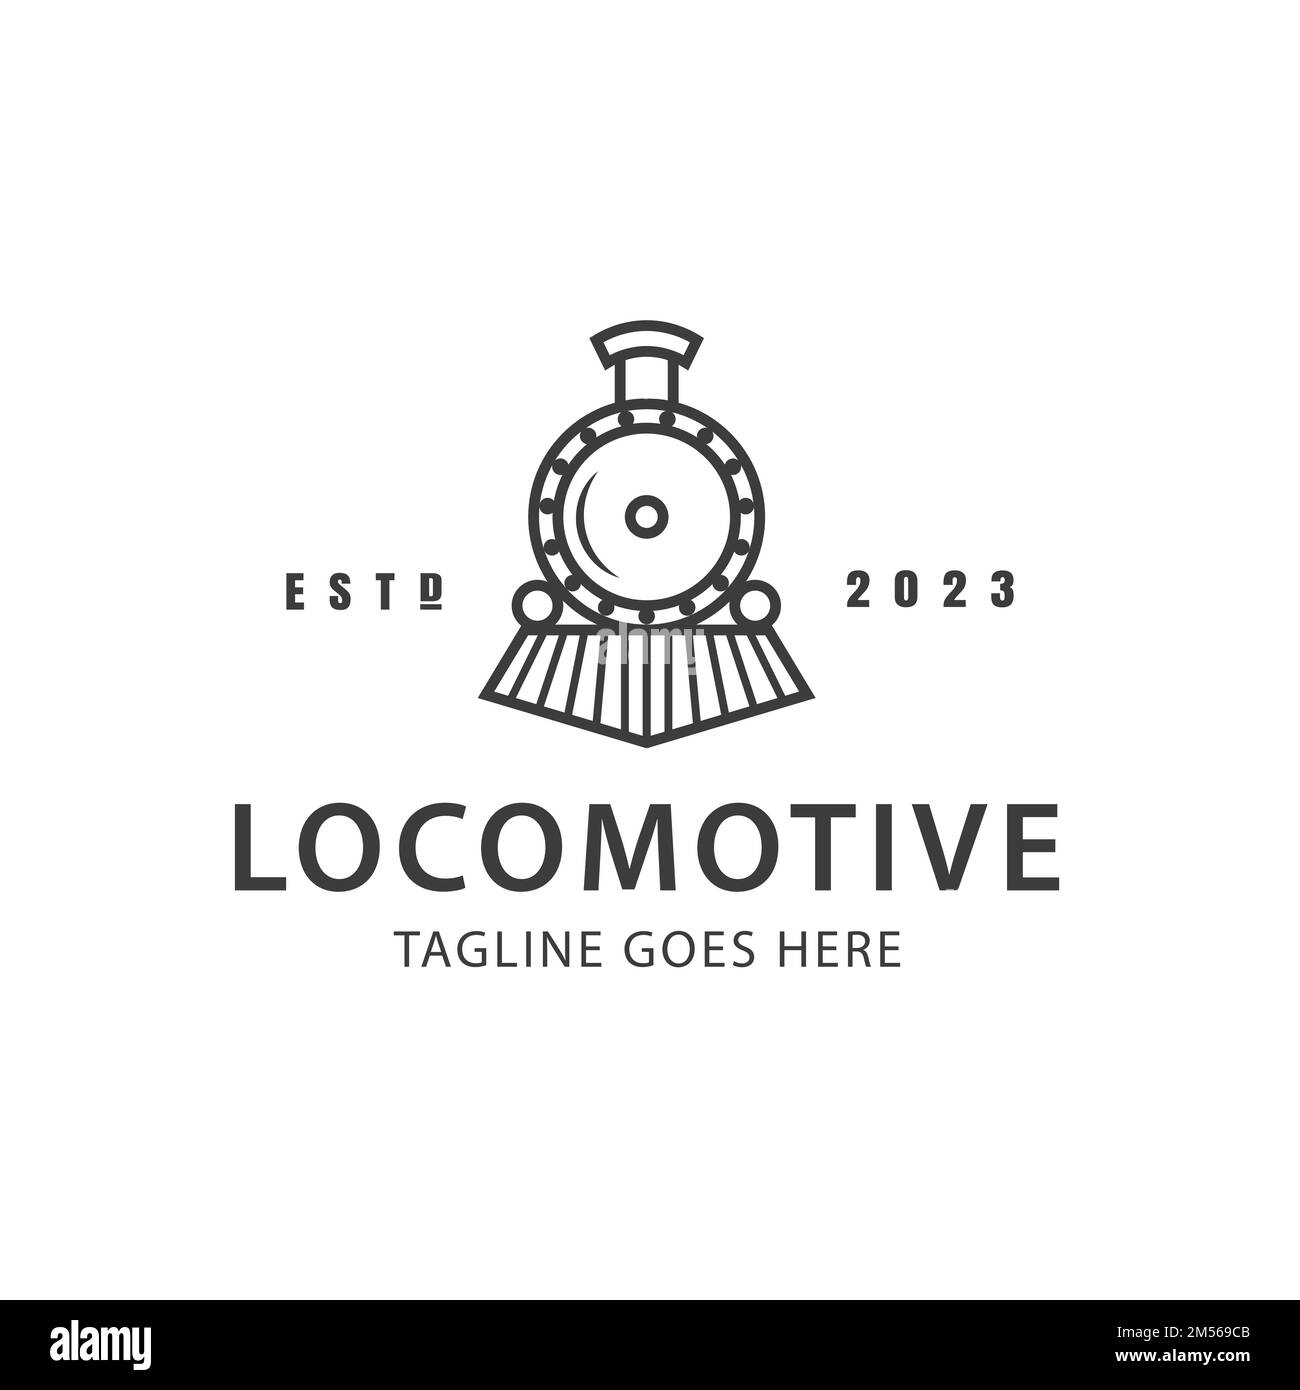 Vintage Old Locomotive Engine logo Vector. illustration vectorielle du logo de train de locomotives minimalisme simple. panneau ou symbo rétro ou vintage Illustration de Vecteur